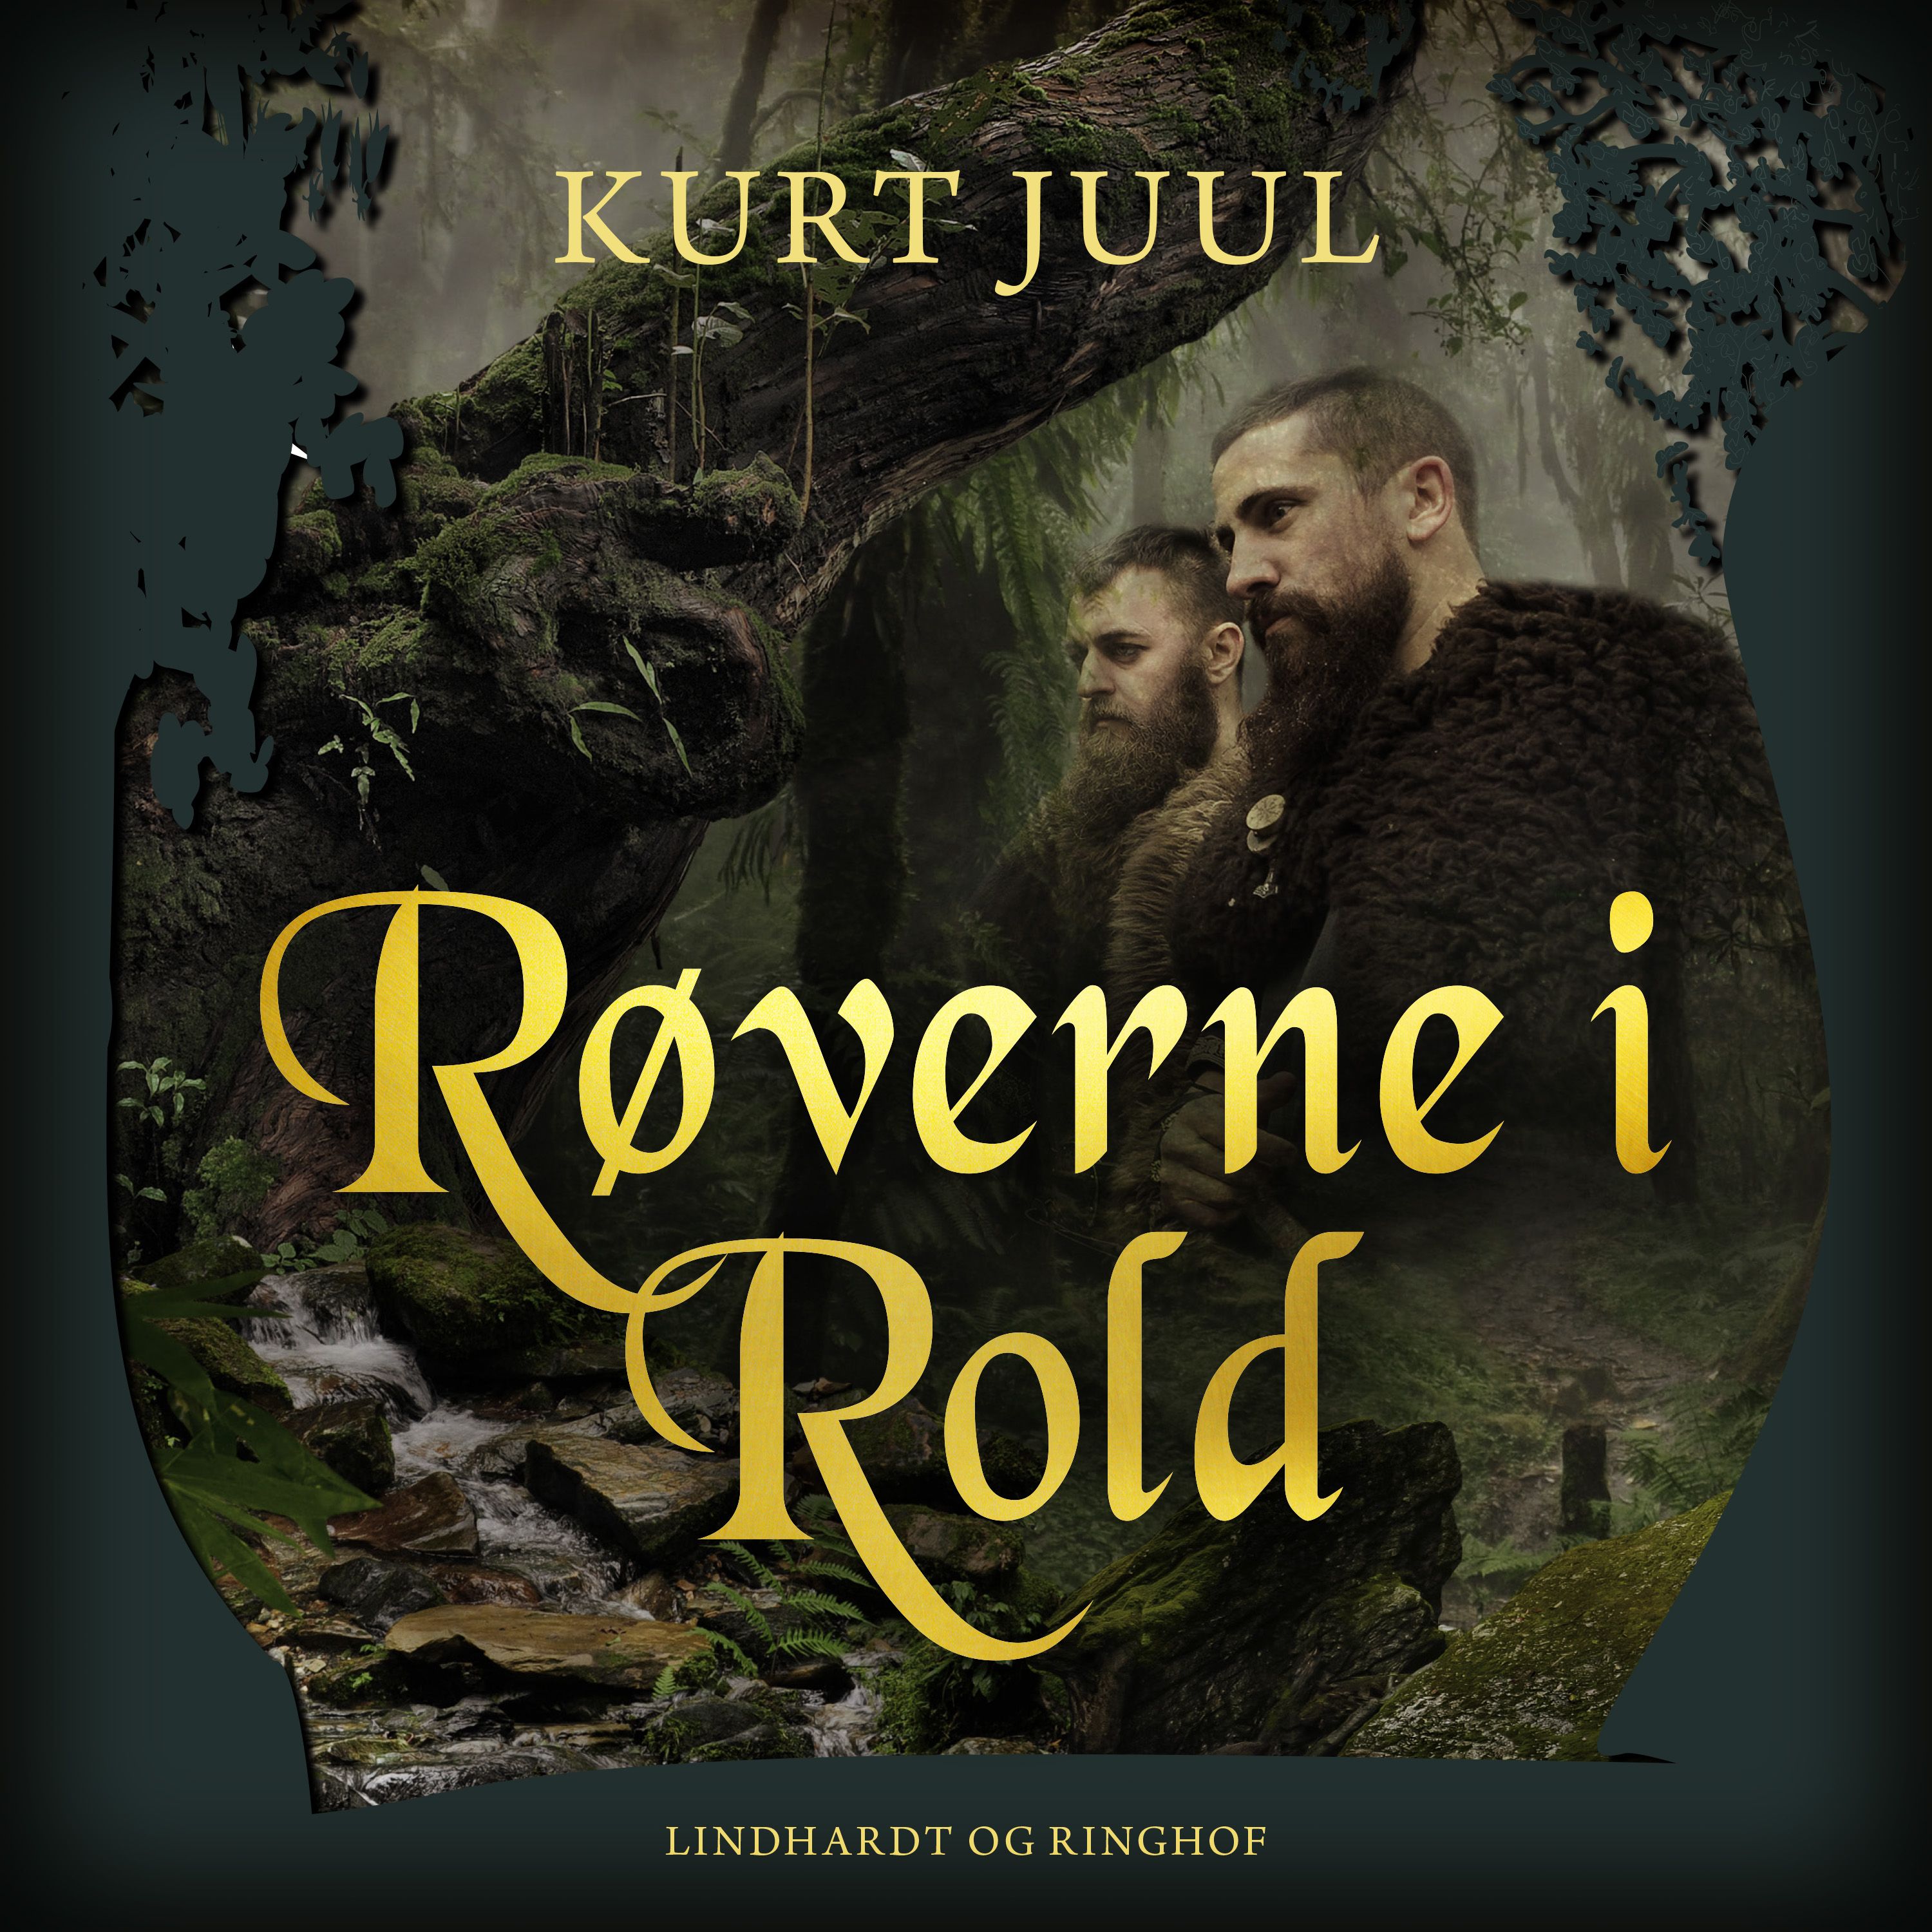 Røverne i Rold, ljudbok av Kurt Juul